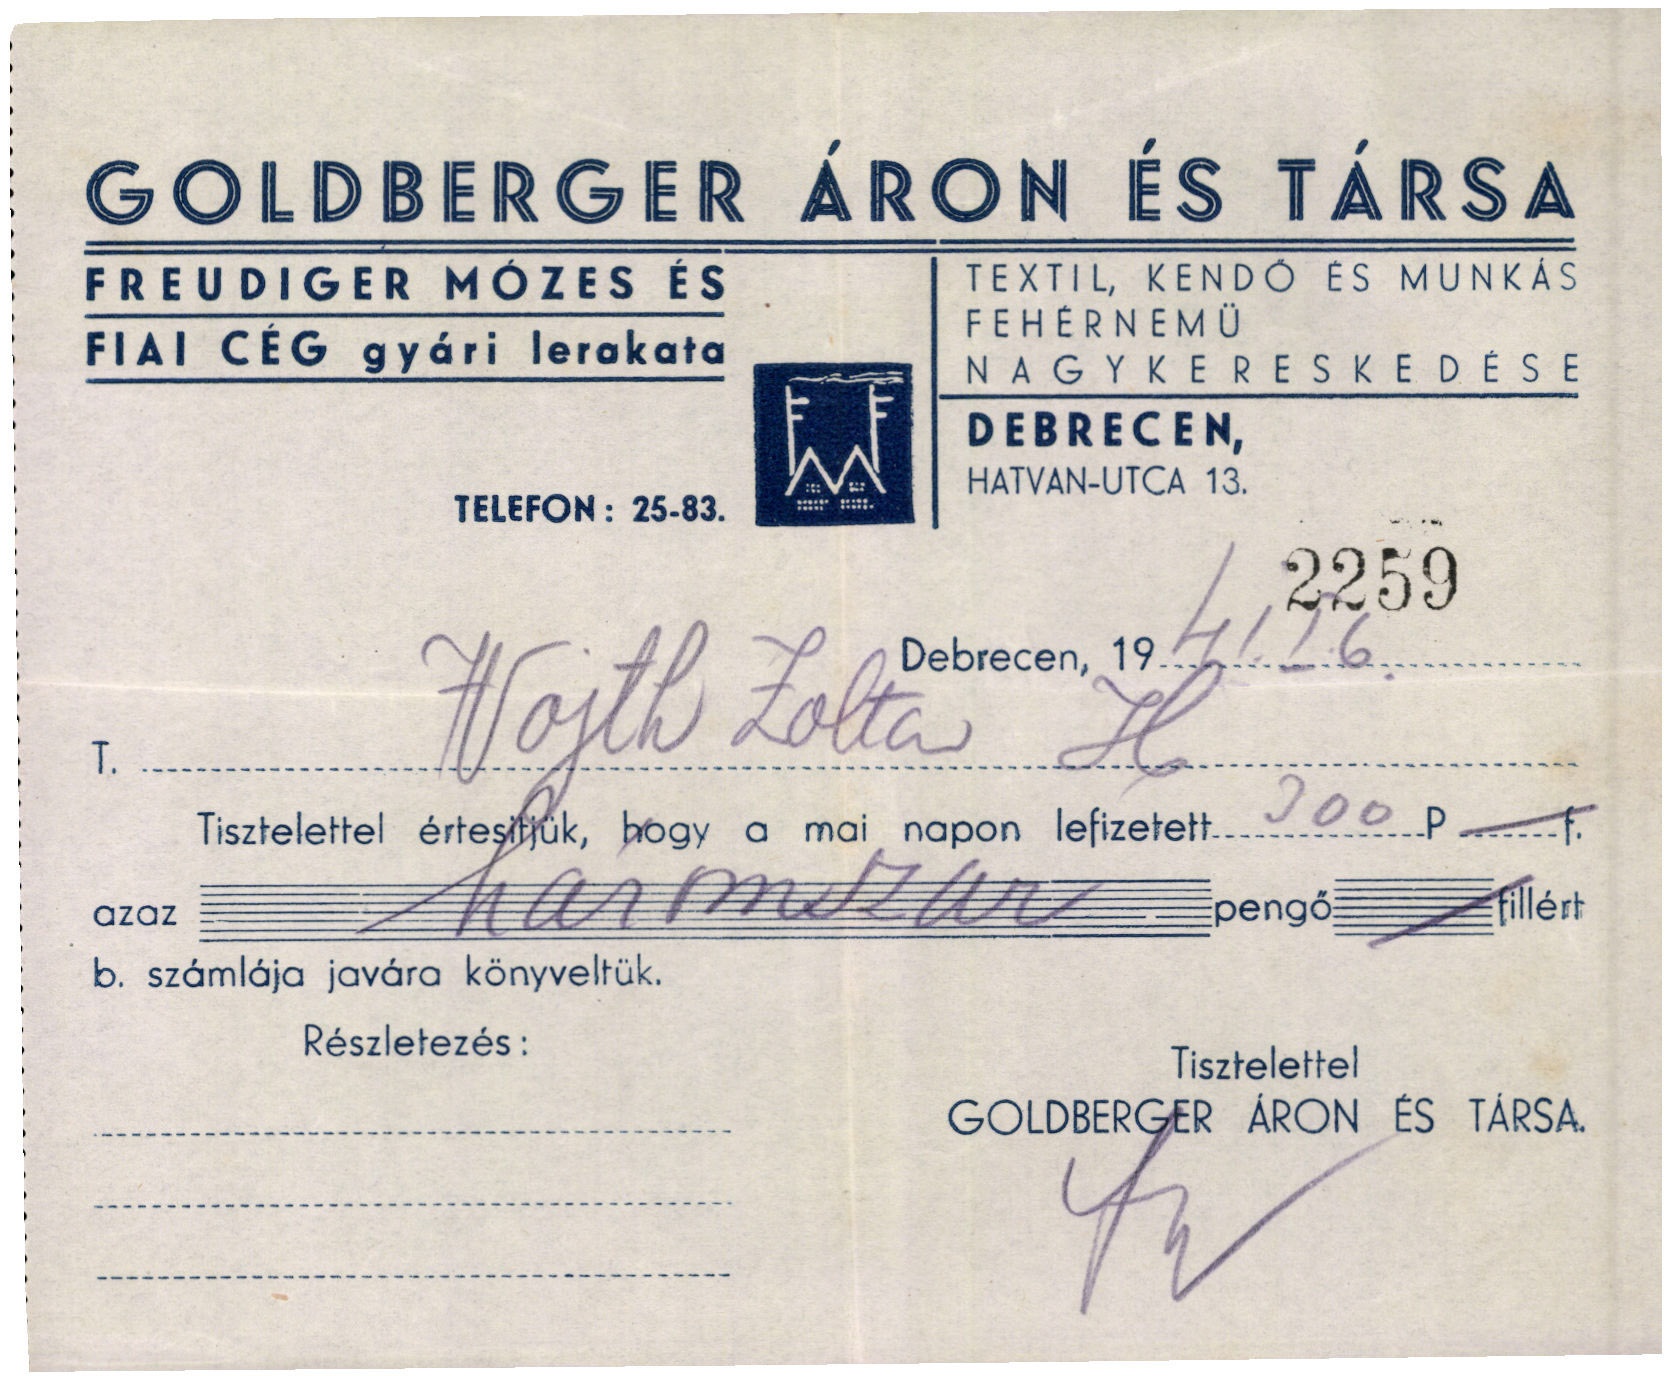 Goldberger Áron és Társa textil, kendő és munkás fehérnemű nagykereskedése (Magyar Kereskedelmi és Vendéglátóipari Múzeum CC BY-NC-SA)